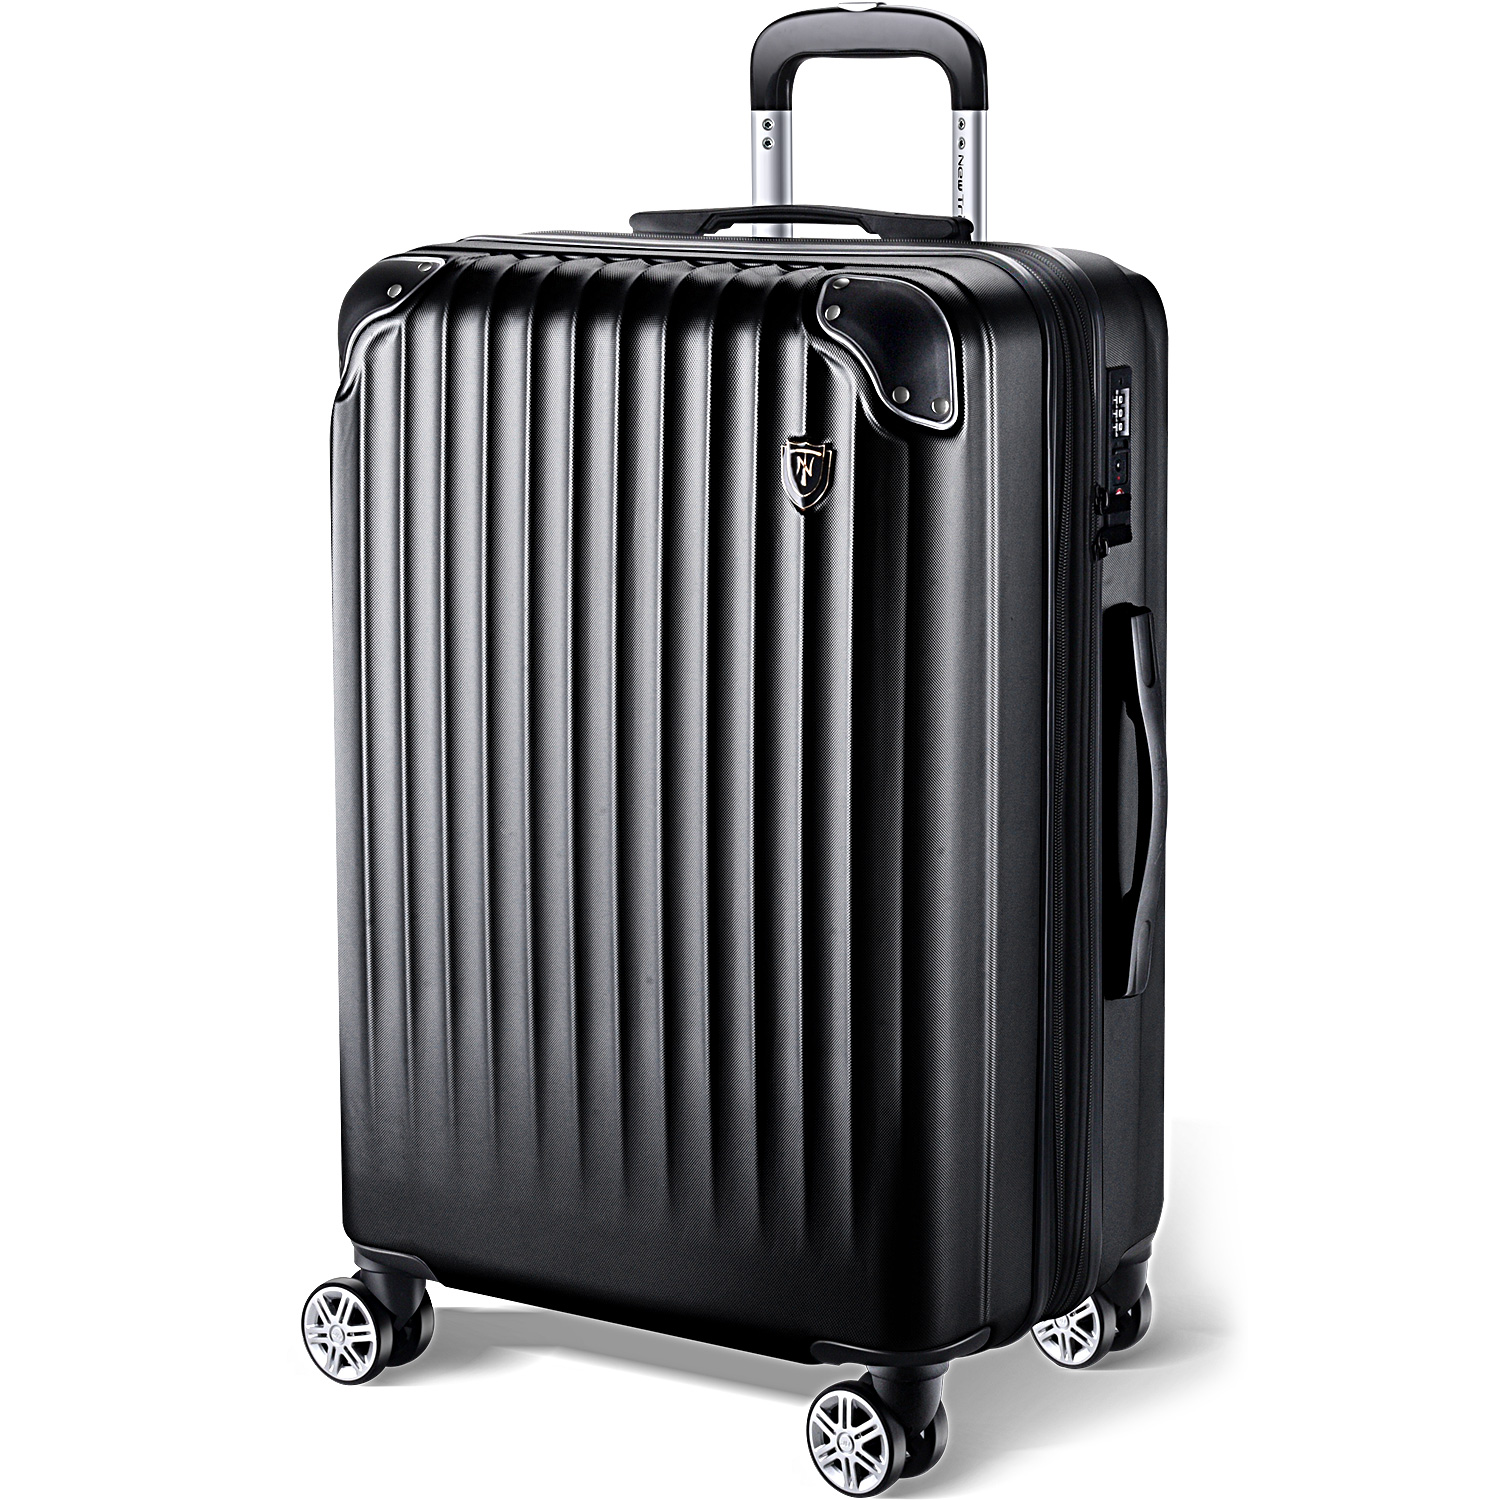 スーツケース 機内持込 軽量 大型 耐衝撃最強 キャリーケース キャリーバッグ 20インチ 24インチ 28インチ Sサイズ Mサイズ Lサイズ  PC材質 TSAロック 旅行